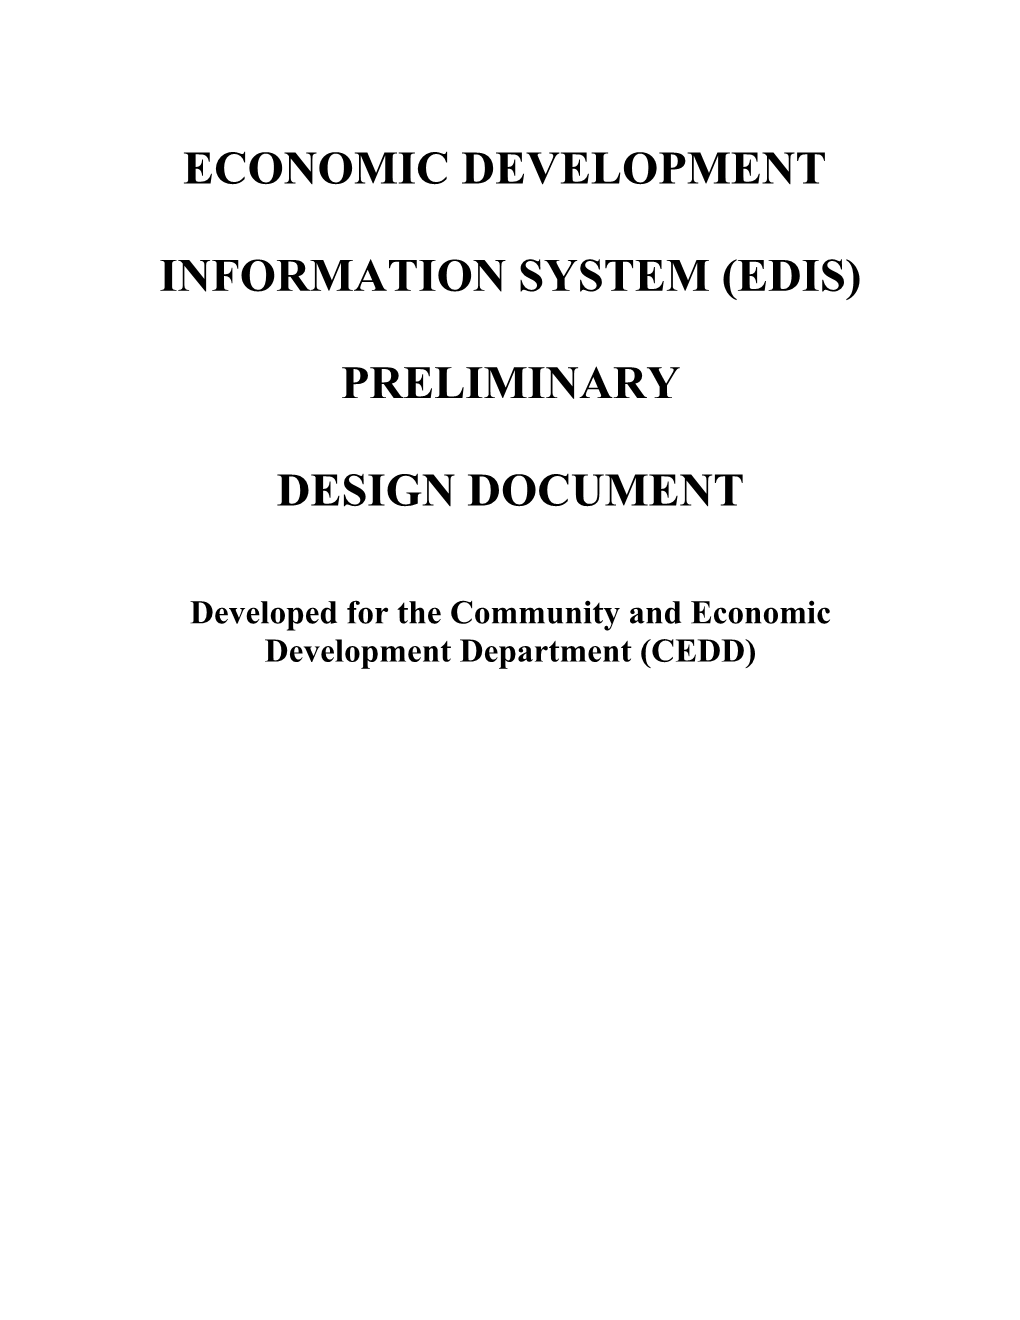 Economic Development s1